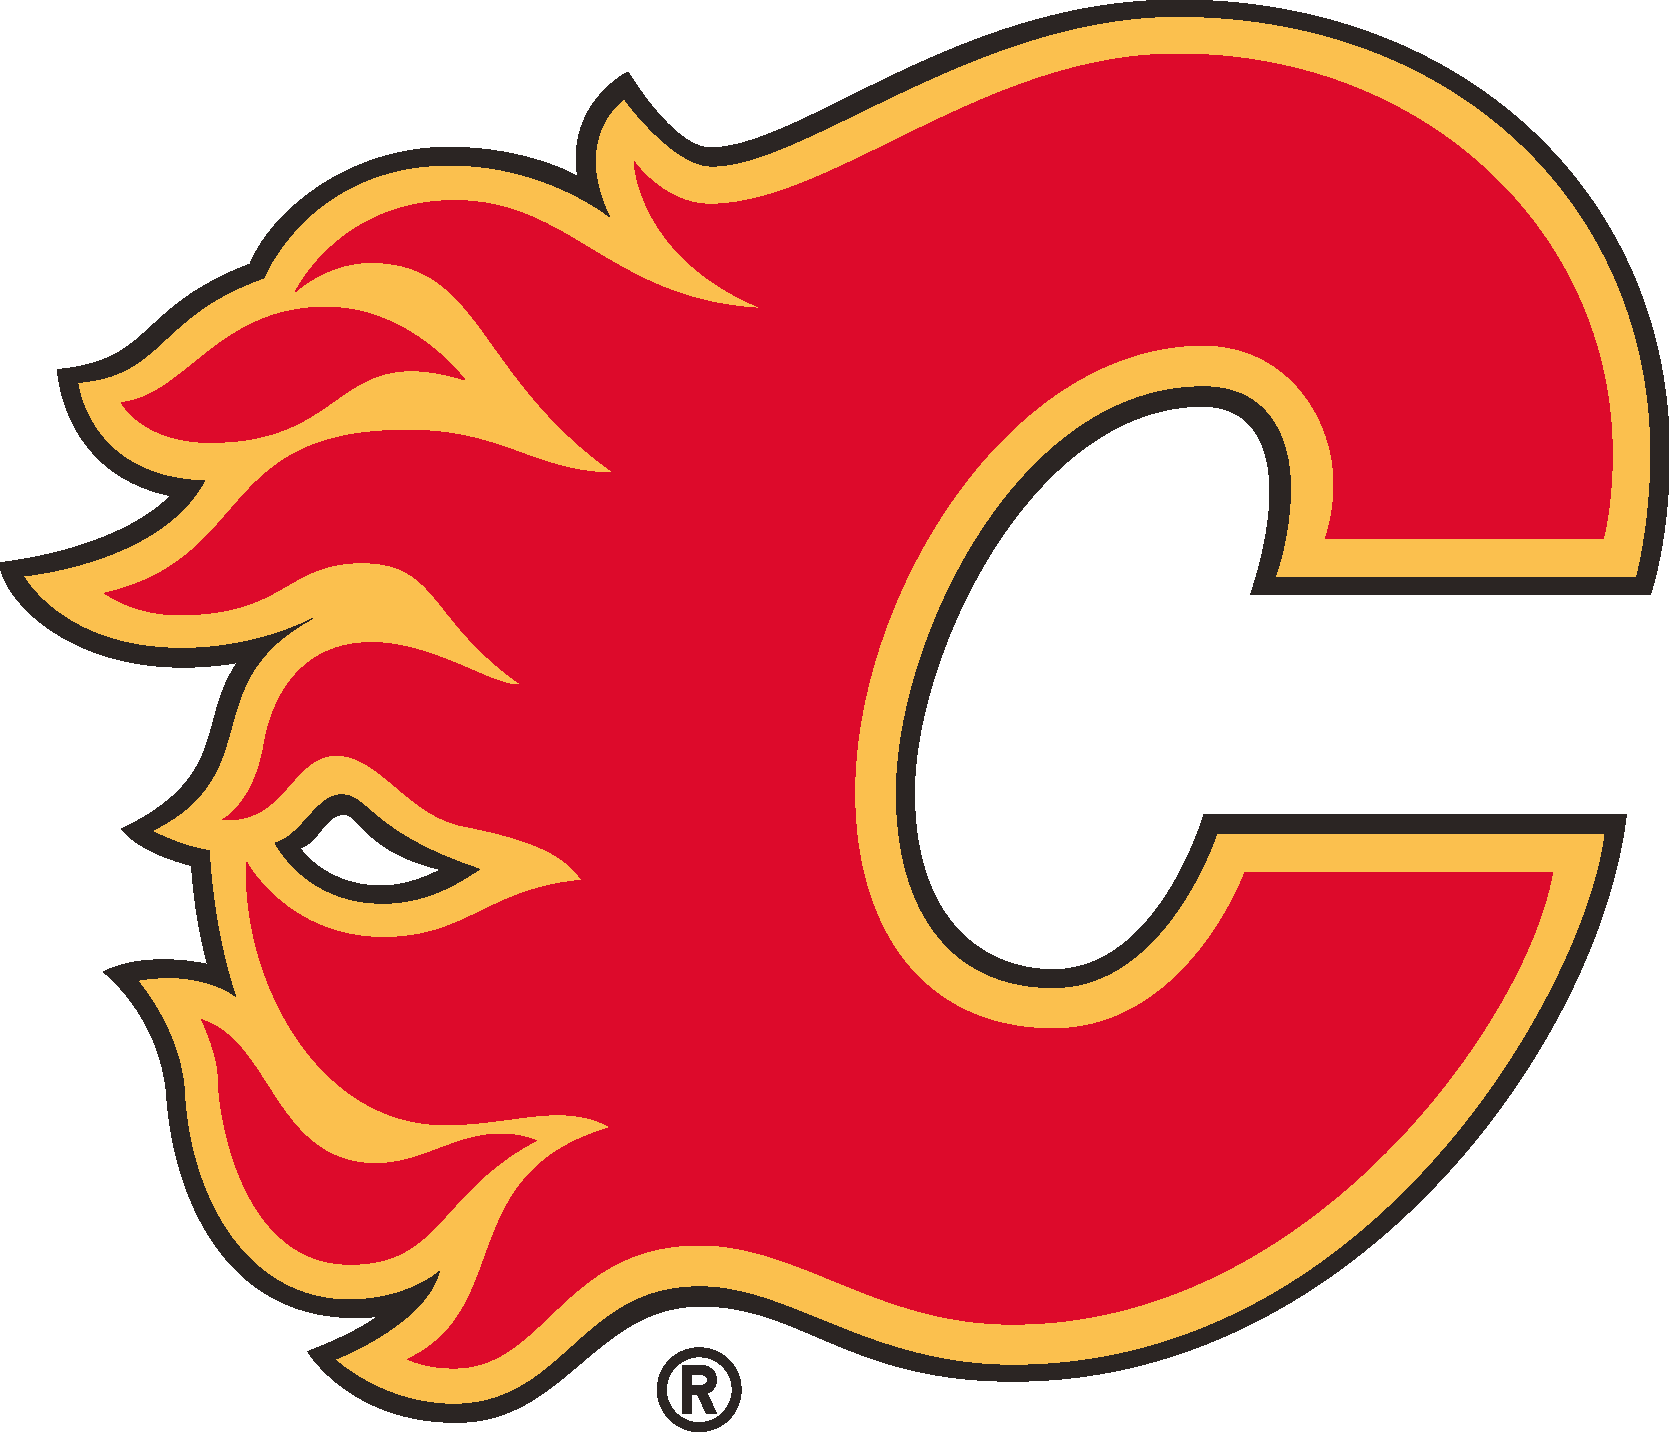 Calgary Flames Logo [NHL]